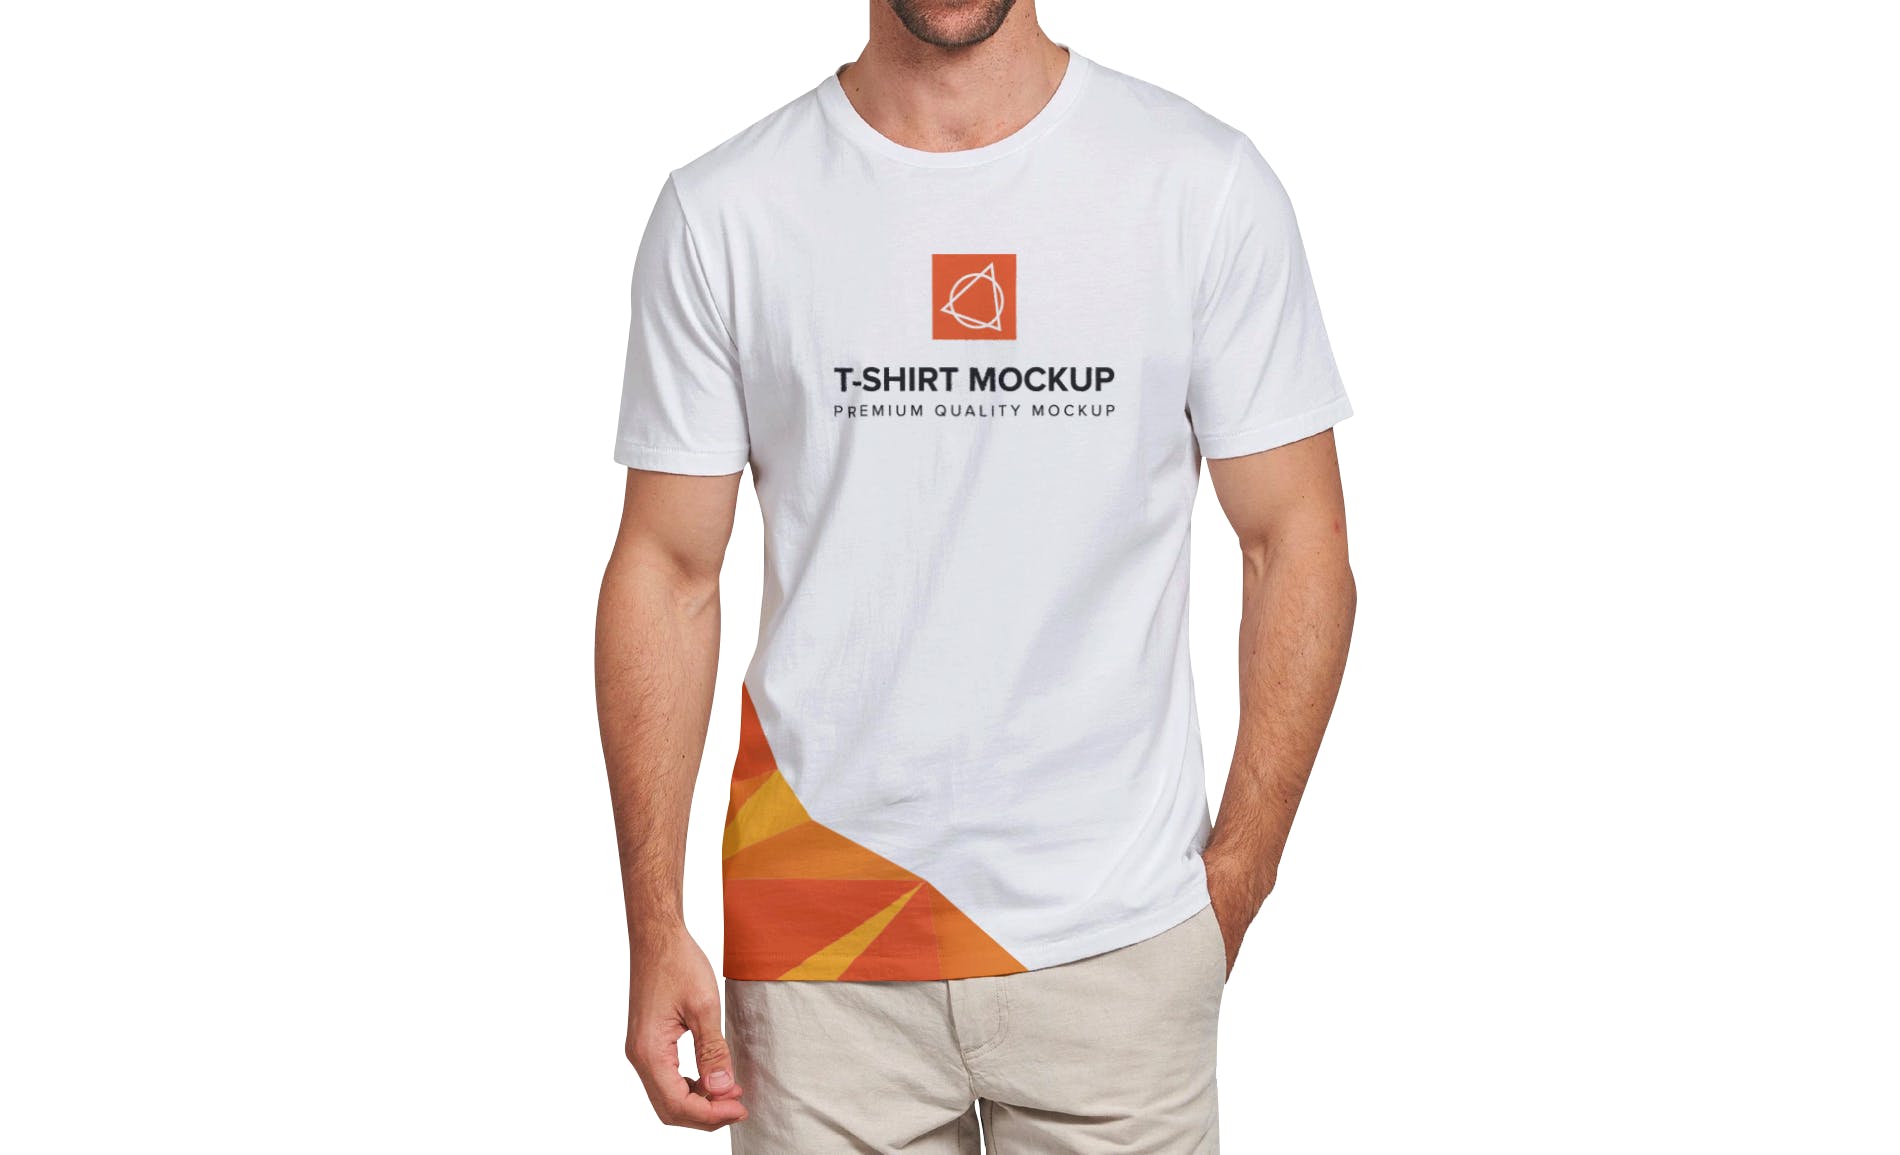 男士T恤印花设计效果图样机大洋岛精选v03 T-shirt Mockup Vol 03插图4